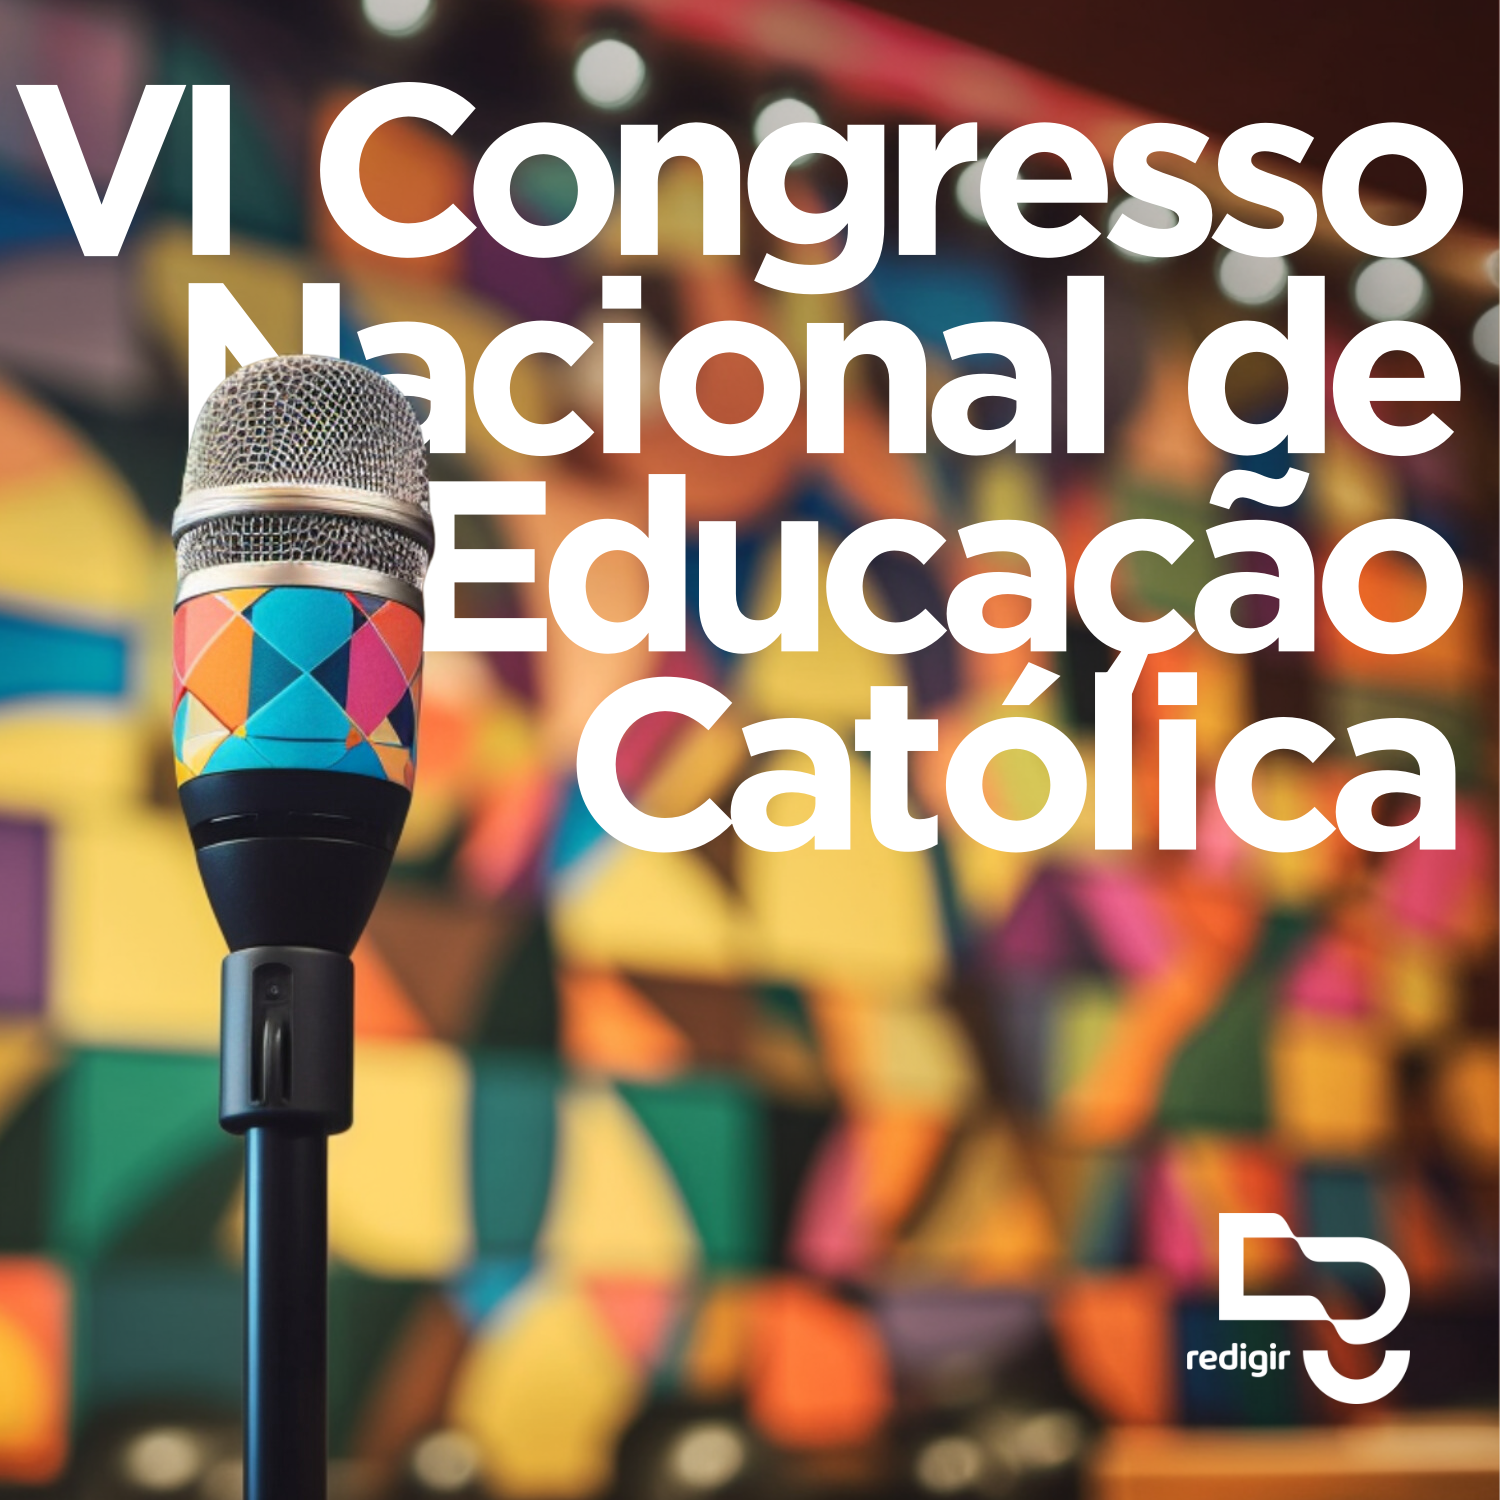 Congresso Nacional de Educação Católica